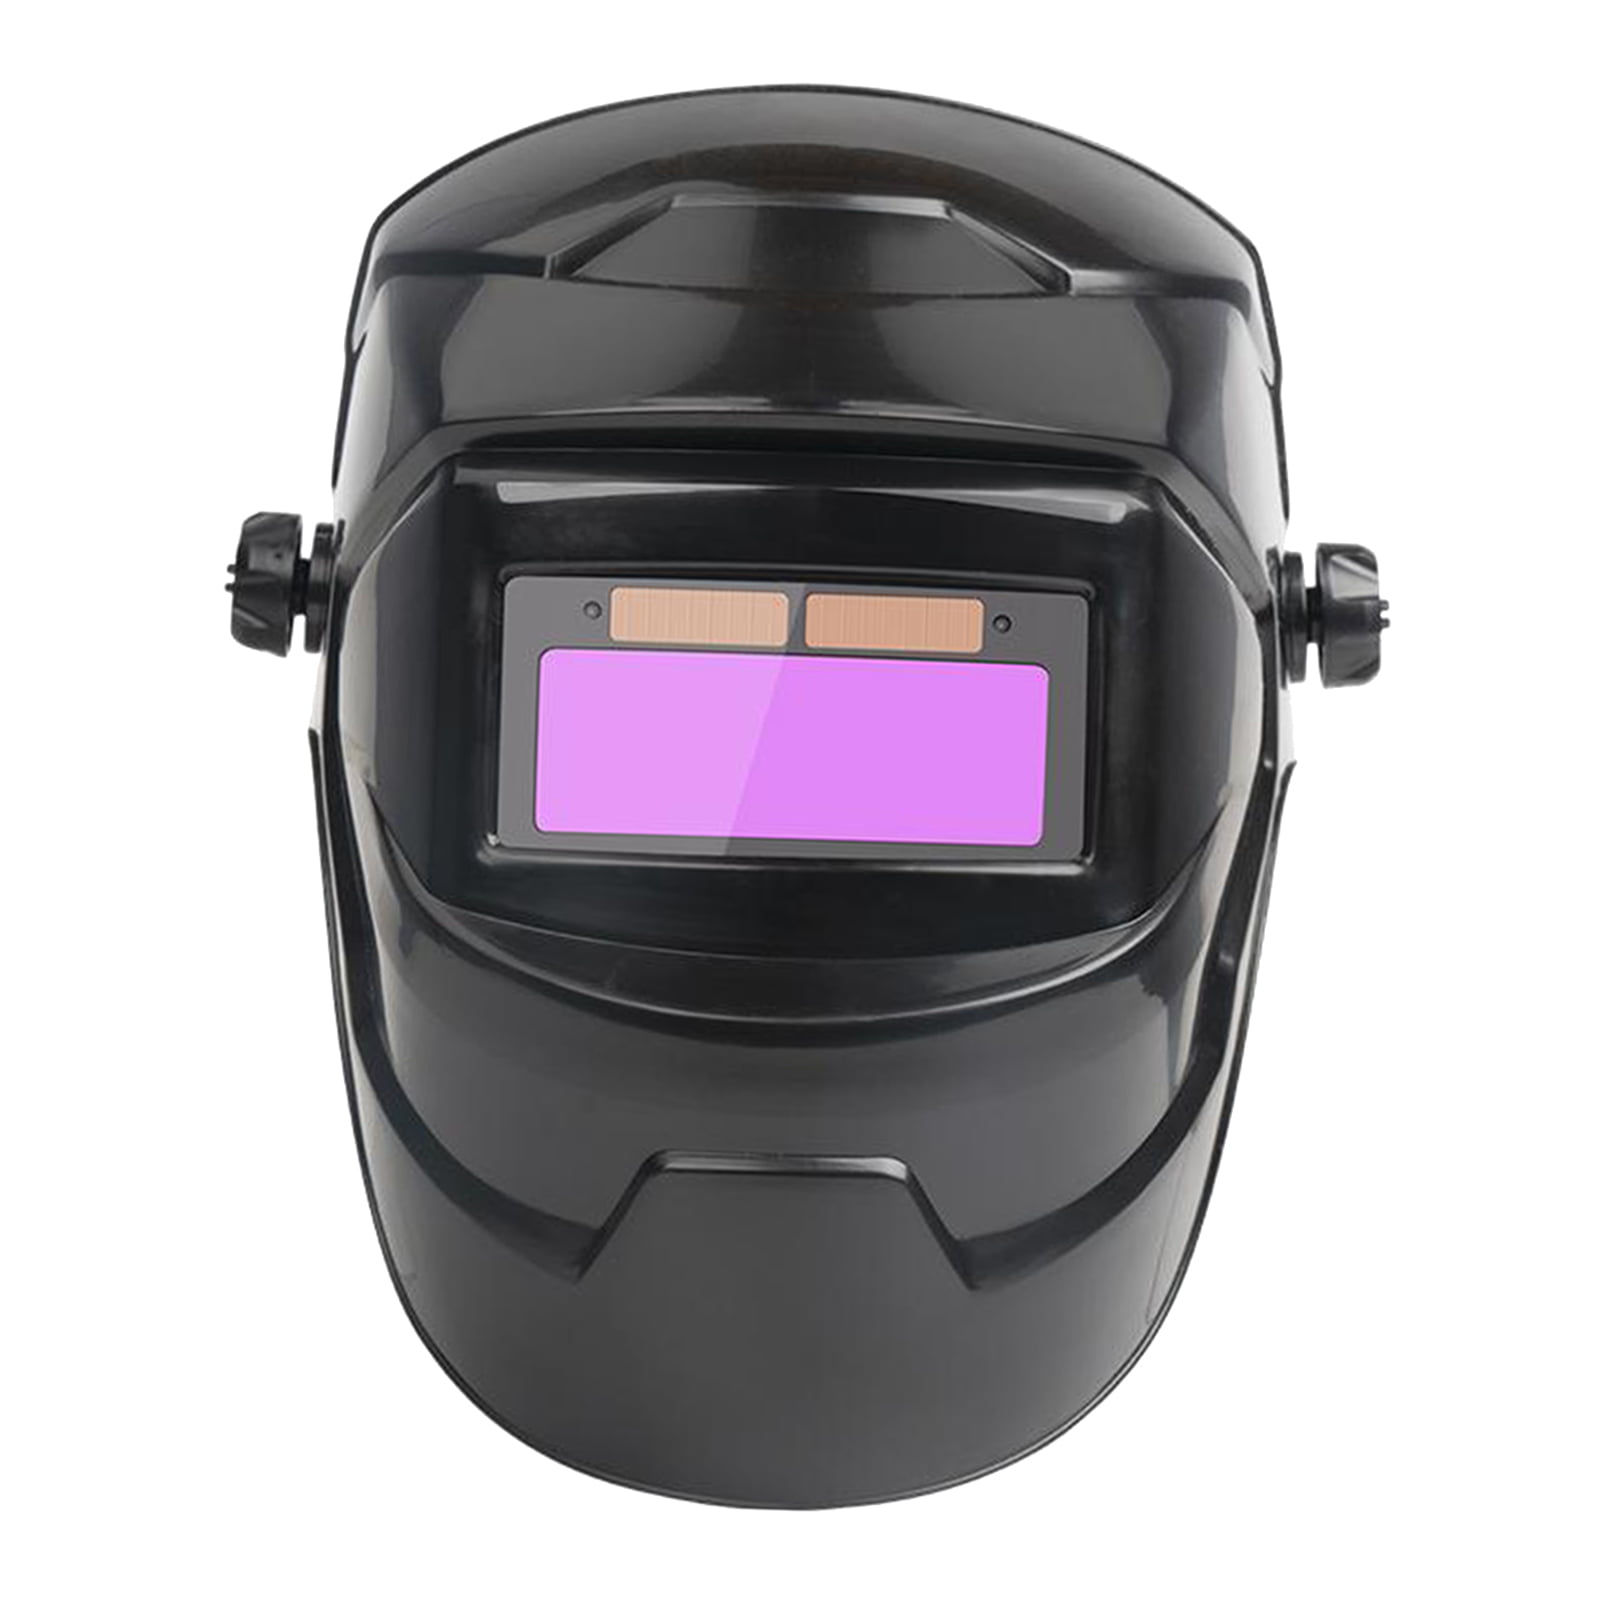 Welding Auto Darkening Filter Welder Goggles LCD Solar Lens Helmet Eye Cover Hot